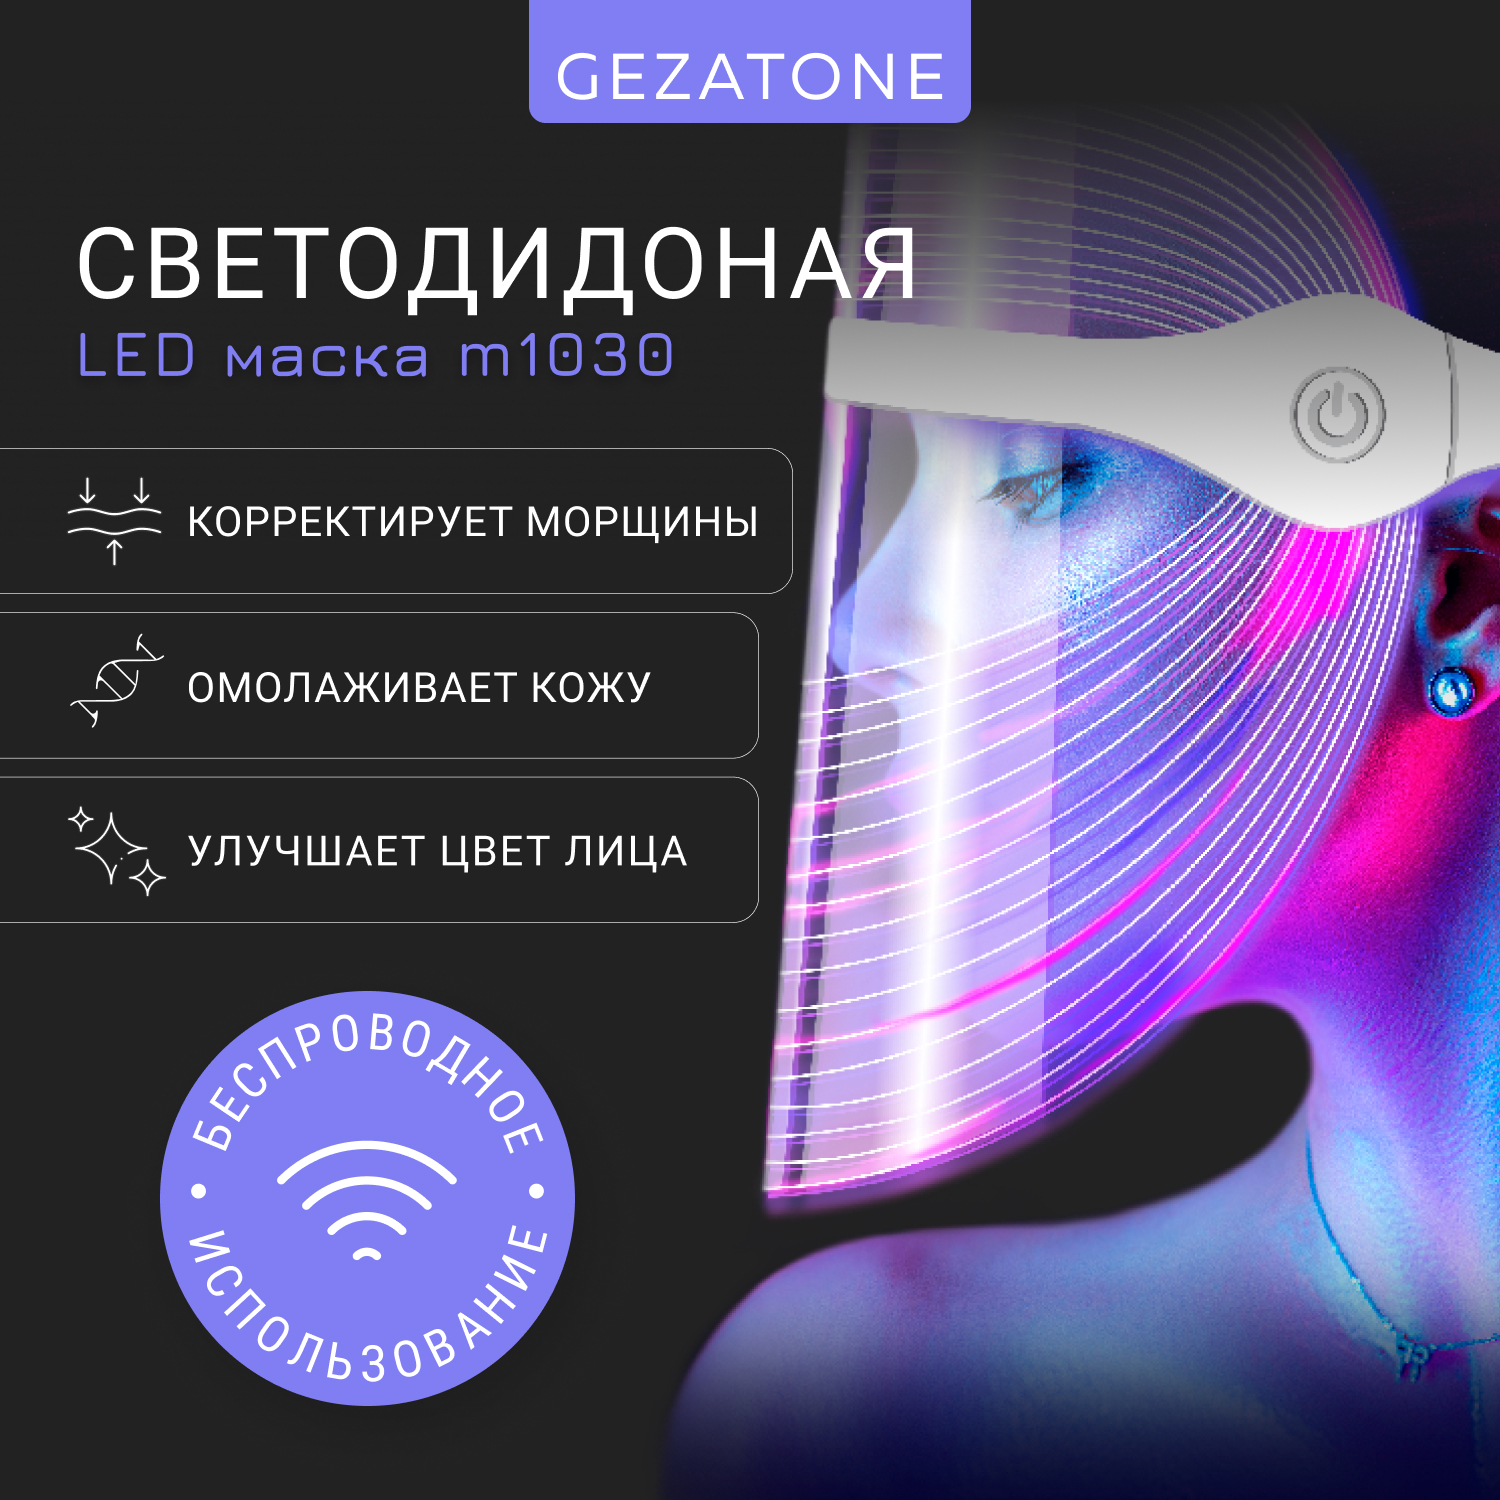 Светодиодная LED маска для омоложения кожи лица и шеи с 7 цветами Gezatone m1030 coolmoon аккумуляторная беспроводная бесшумная красочная светодиодная мышь оптическая домашняя офисная игровая мышь